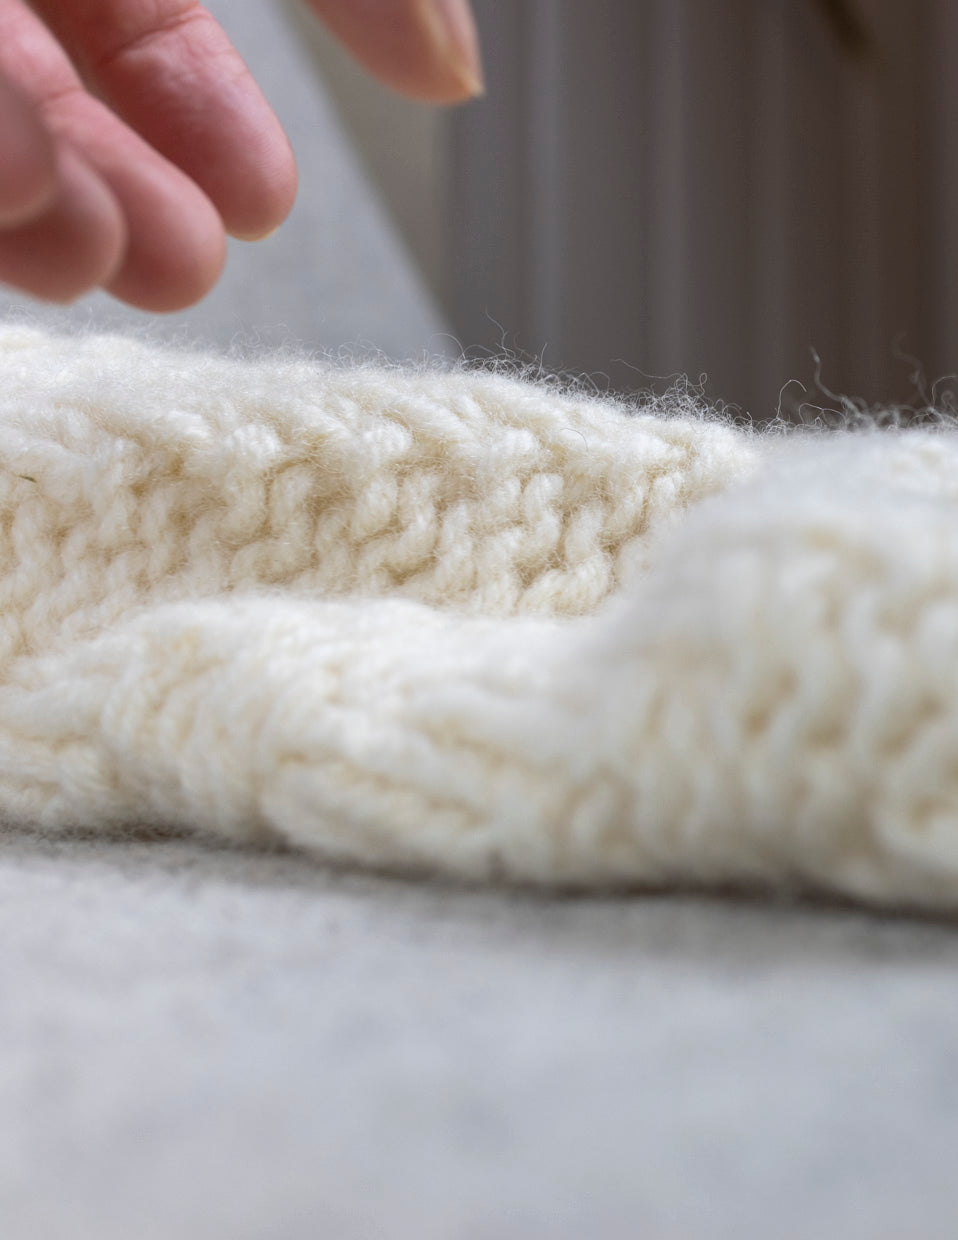 Neck warmer in fine lamb's wool, knitting kit